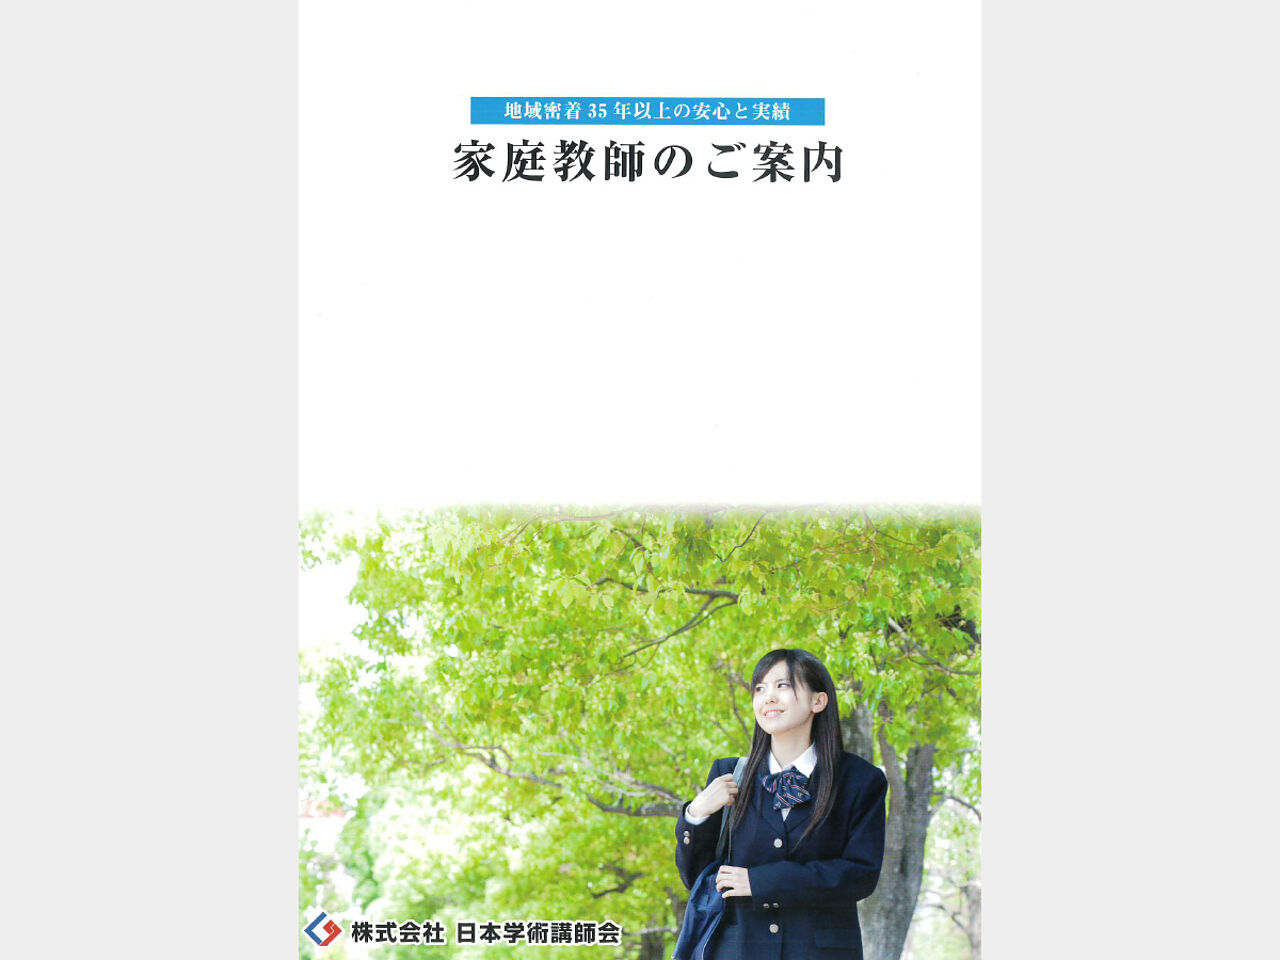 日本学術講師会の家庭教師のパンフレット